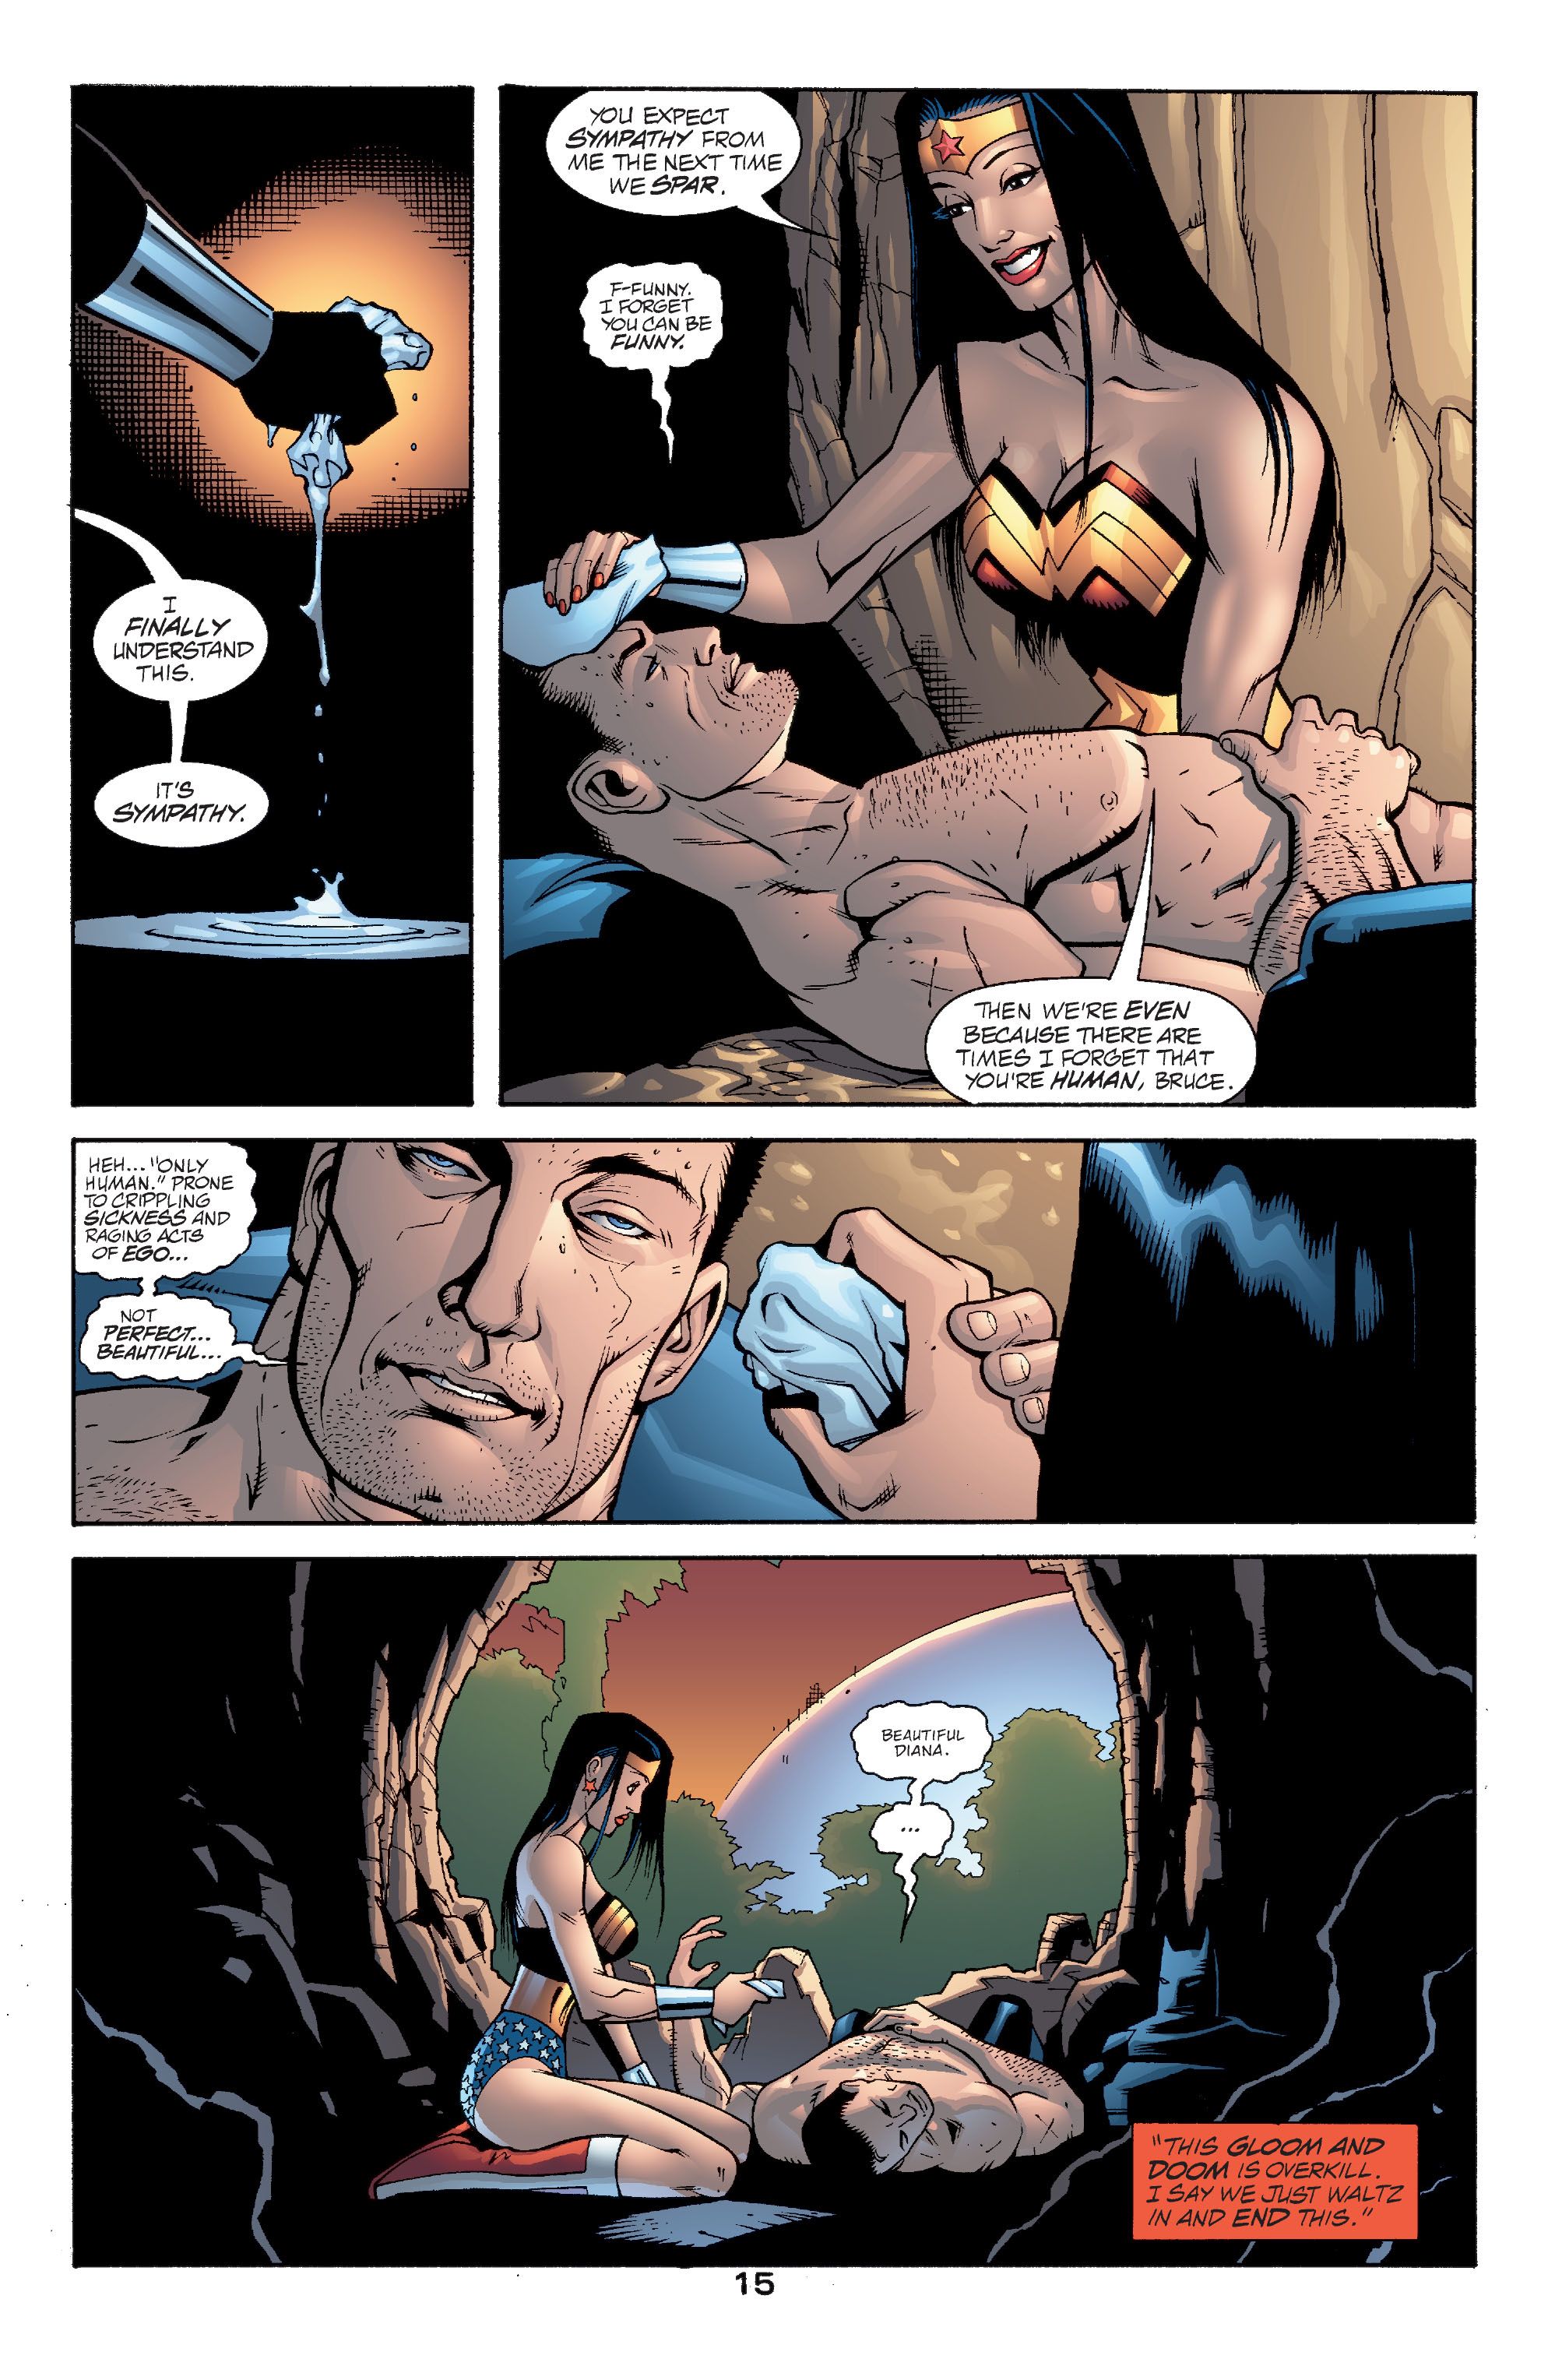 Wonder Woman opiekuje się Batmanem